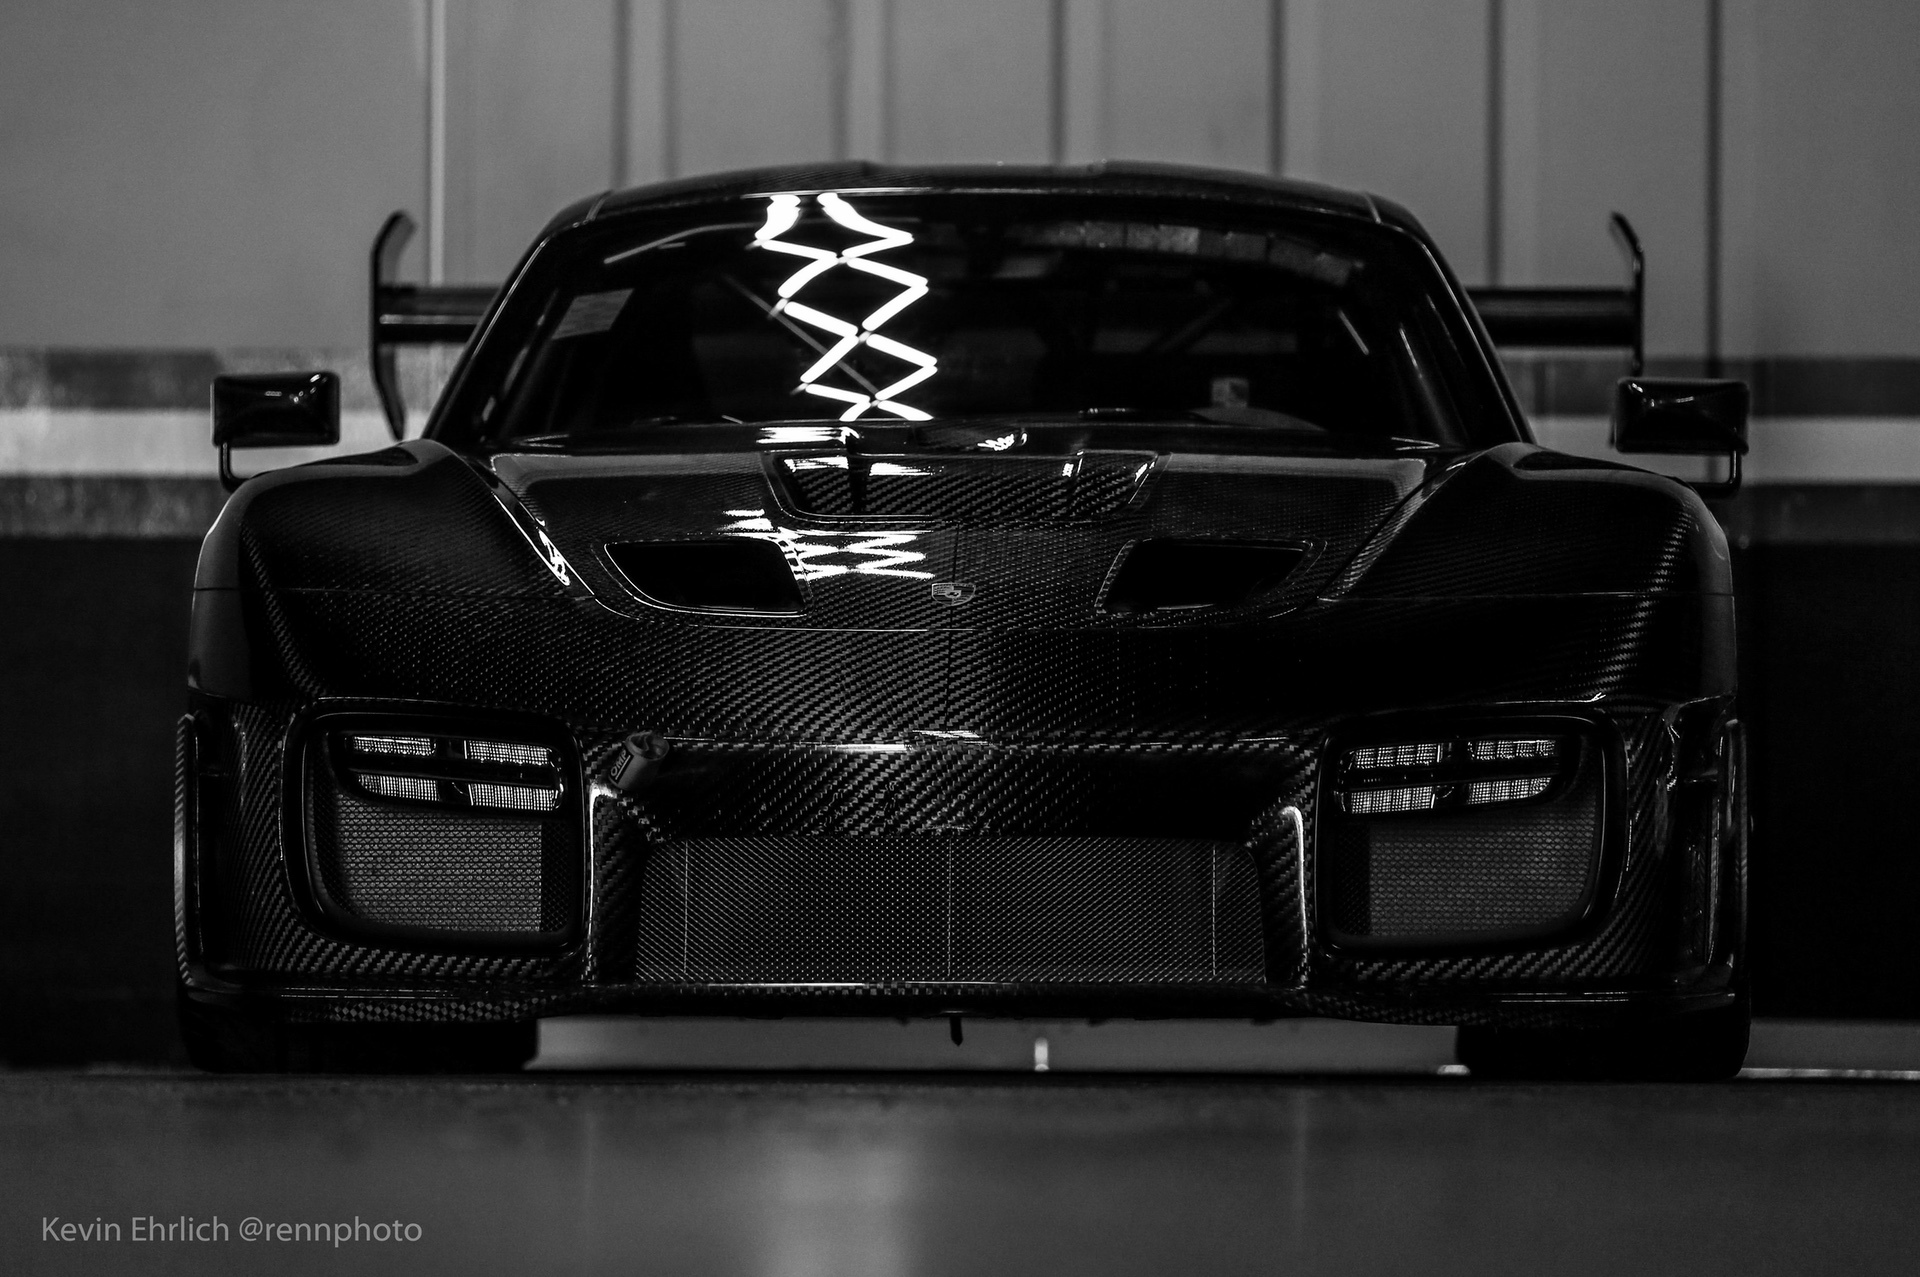 Front view of black carbon fiber Porsche 935/19